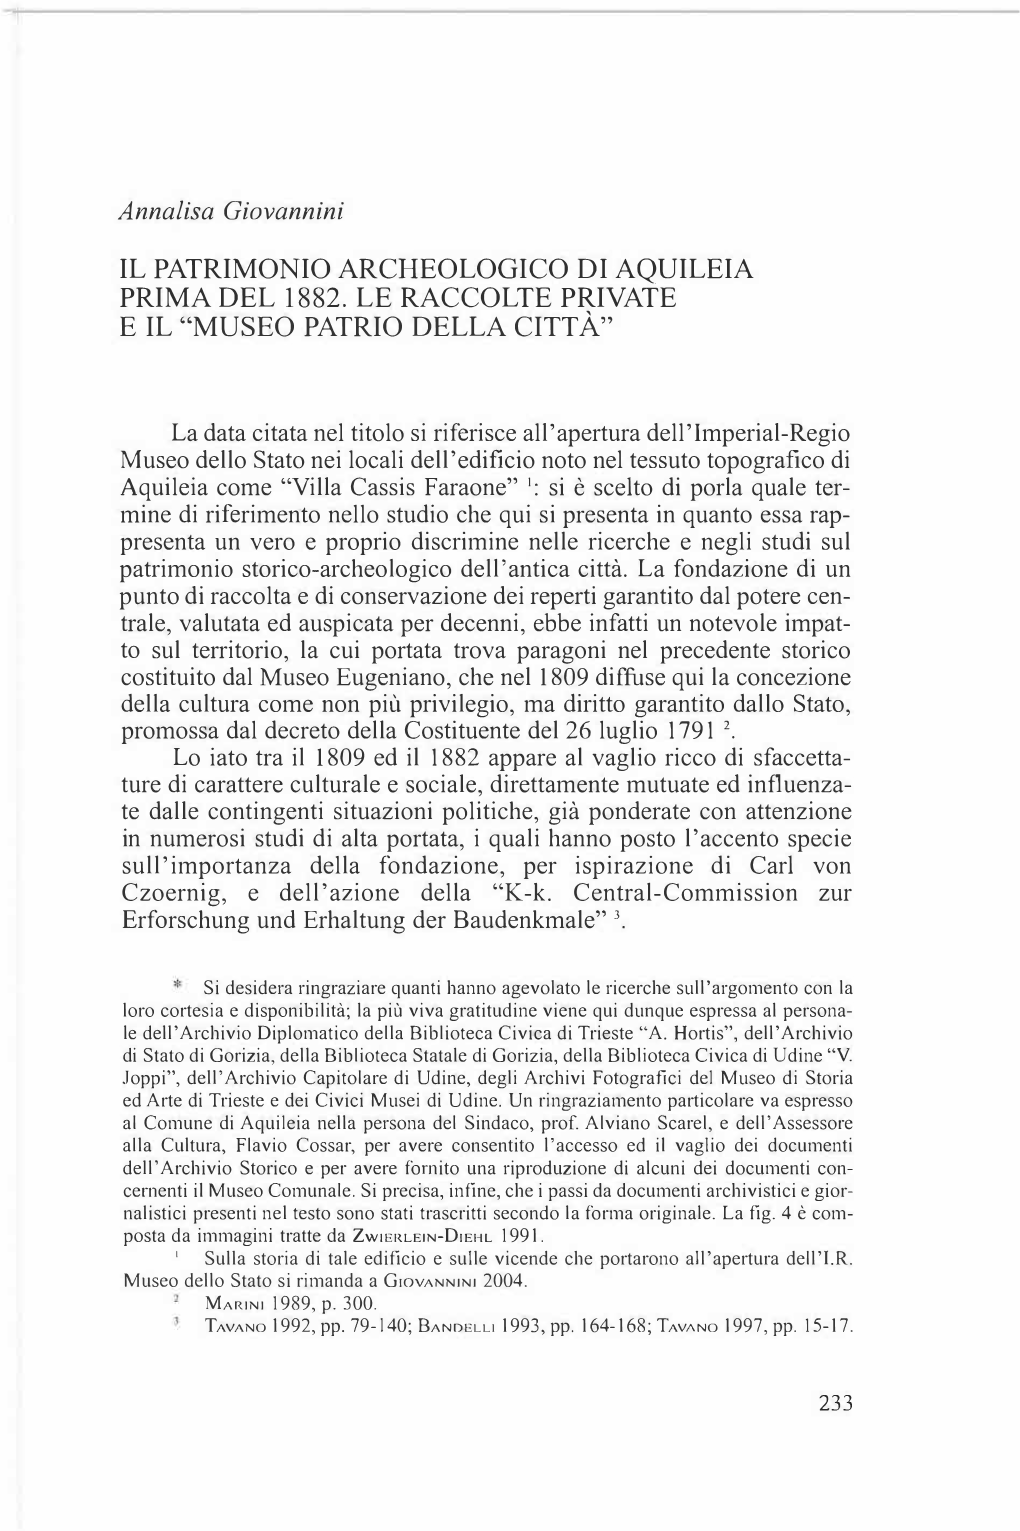 Il Patrimonio Archeologico Di Aquileia Prima Del 1882. Le Raccolte Private E Il "Museo Patrio Della Citta"